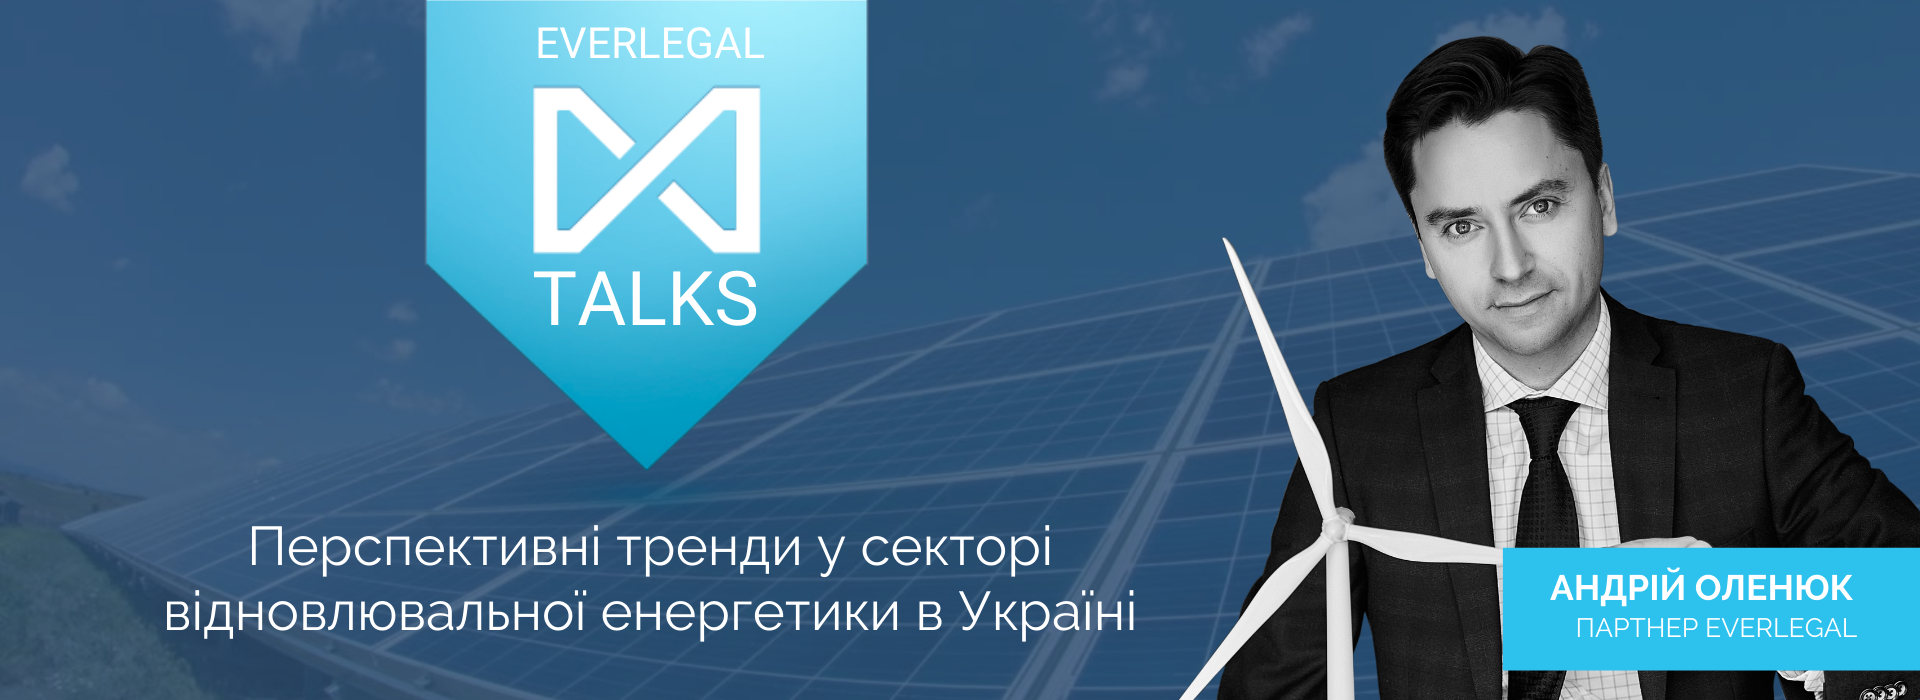 EverlegalTalks: Андрій Оленюк про перспективні тренди у секторі відновлювальної енергетики в Україні